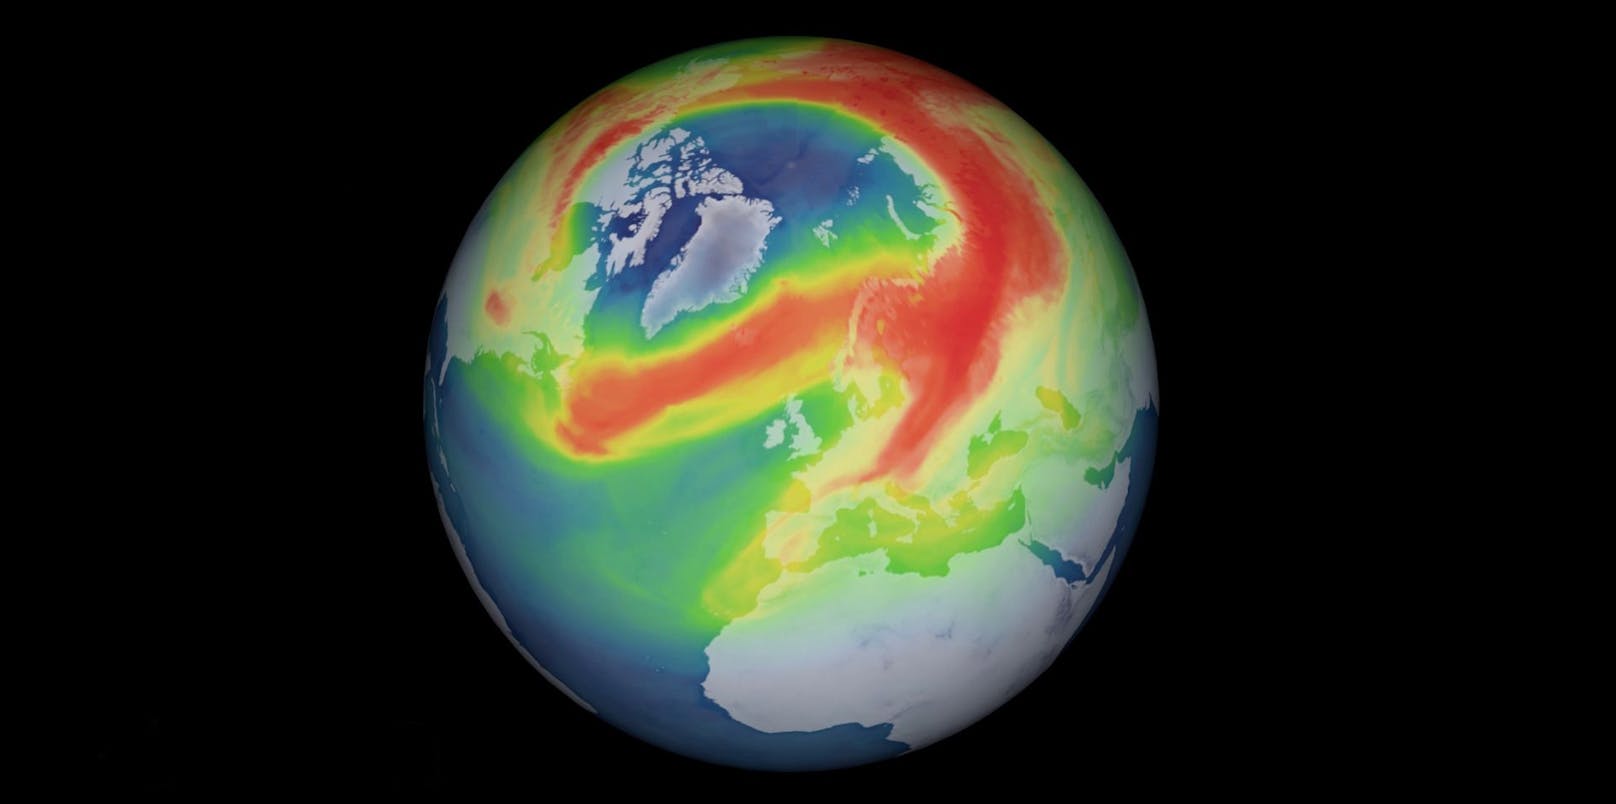 Die Dicke der Ozonschicht ist farblich von blau (am niedrigsten) über grün und gelb bis rot (am höchsten) kodiert.